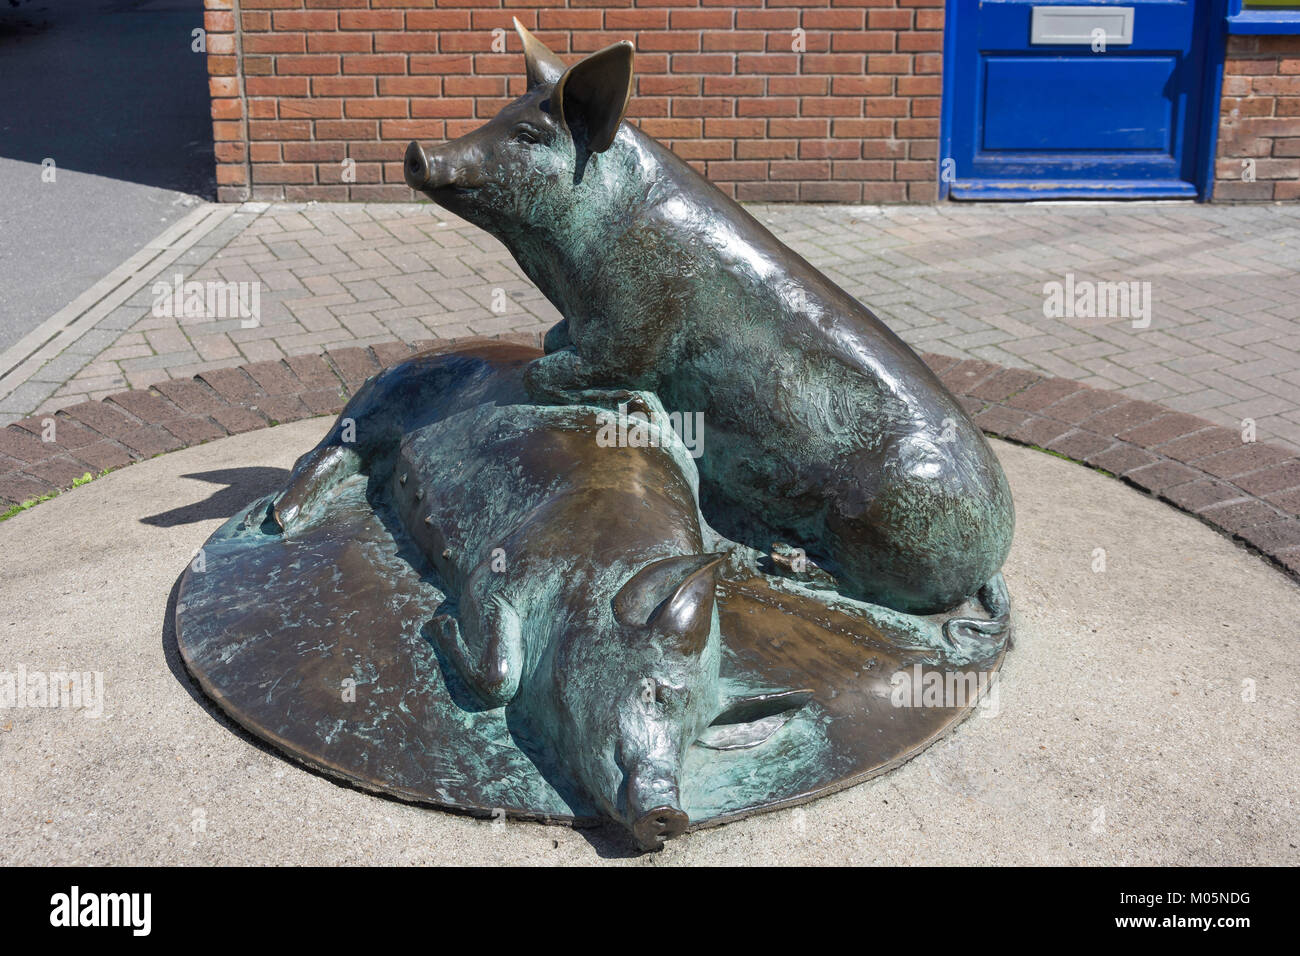 Cochon bronze sculpture à Calne Wiltshire célèbre jambon à l'industrie de la ville, défilé de Phelps, Calne, Wiltshire, Angleterre, Royaume-Uni Banque D'Images